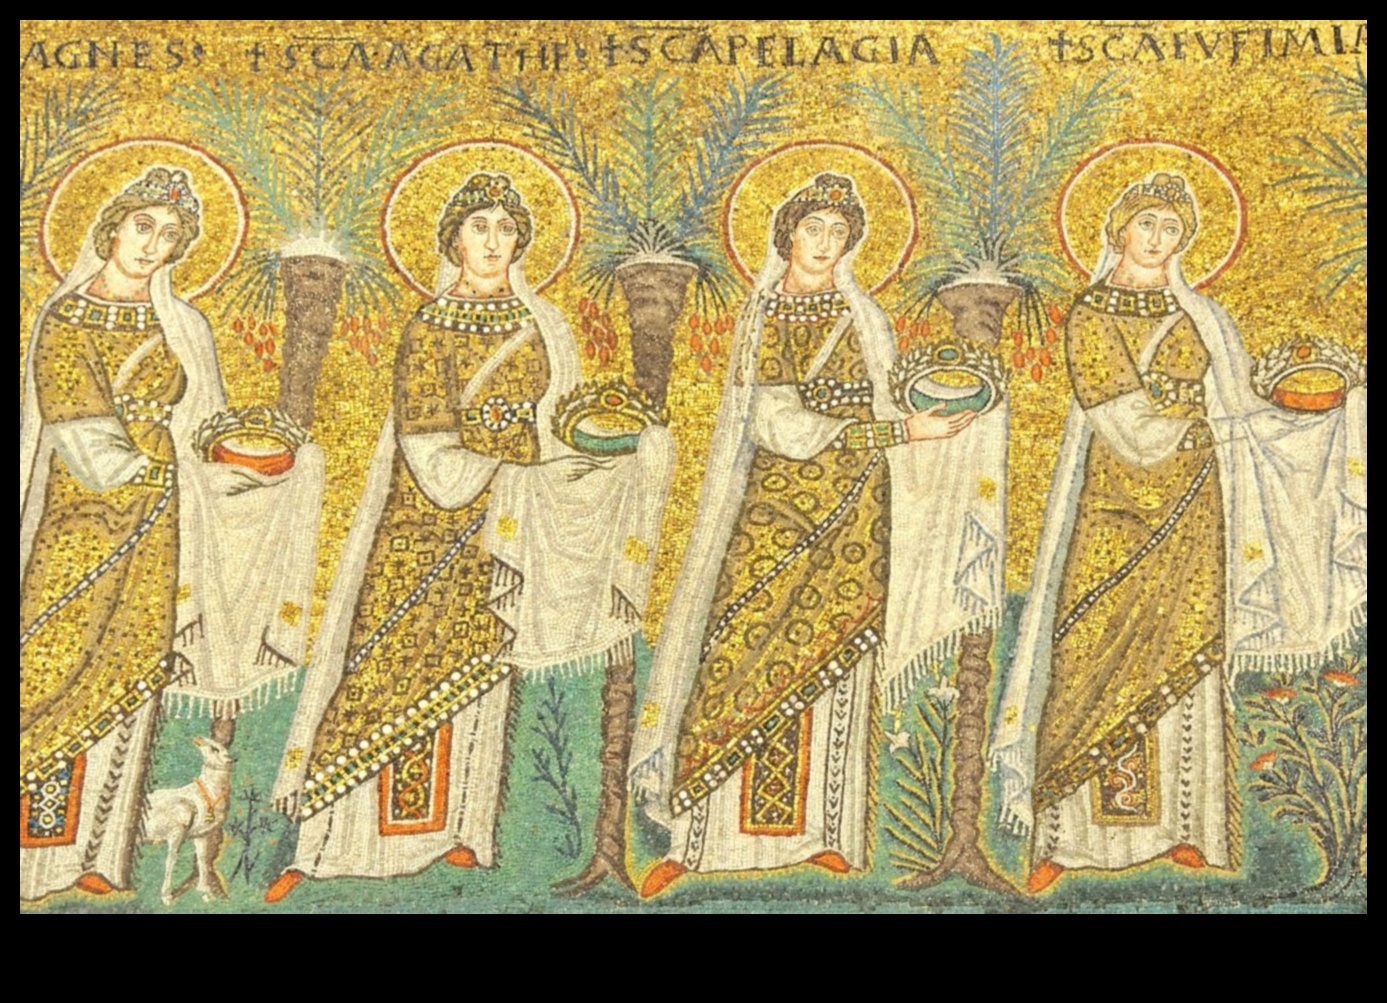 Motivele de aur: utilizarea foii de aur în mozaicile bizantine